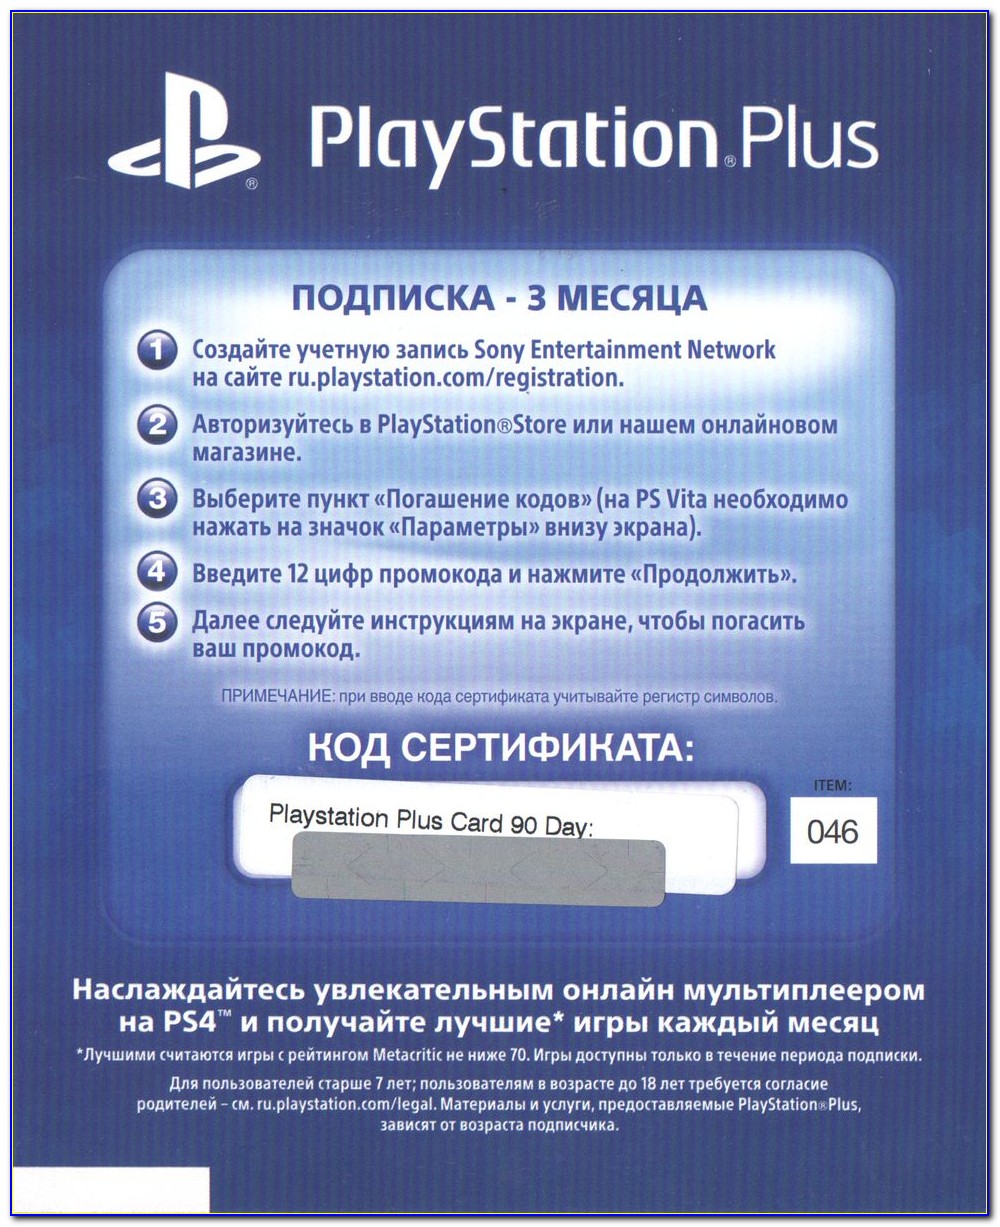 Бесплатная подписка пс плюс. Подписка PS Sony PLAYSTATION Plus. PLAYSTATION Plus карточка. Коды на ПС плюс. Код подписки ПС плюс.